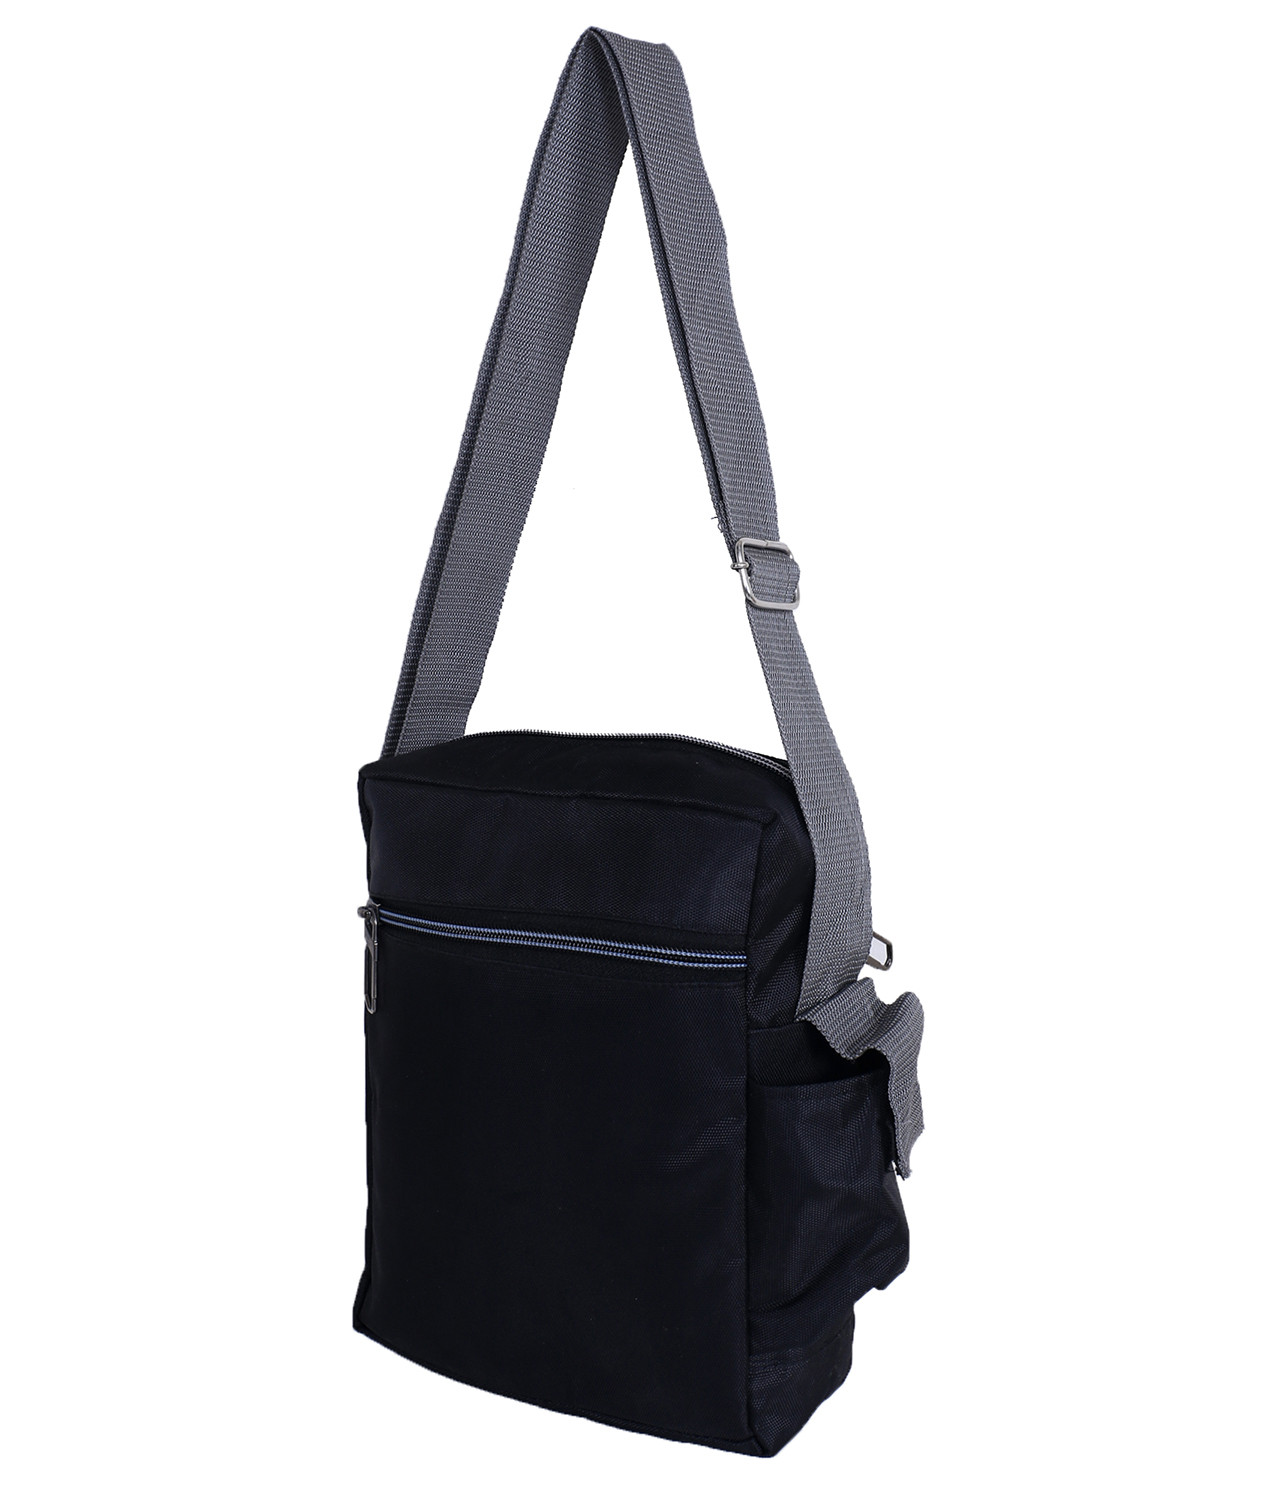 Women Shoulder Handbag Roomy Multiple Pockets Bag Ladies Crossbody Purse  Fashion Tote Top Handle Satchel | Fruugo NO